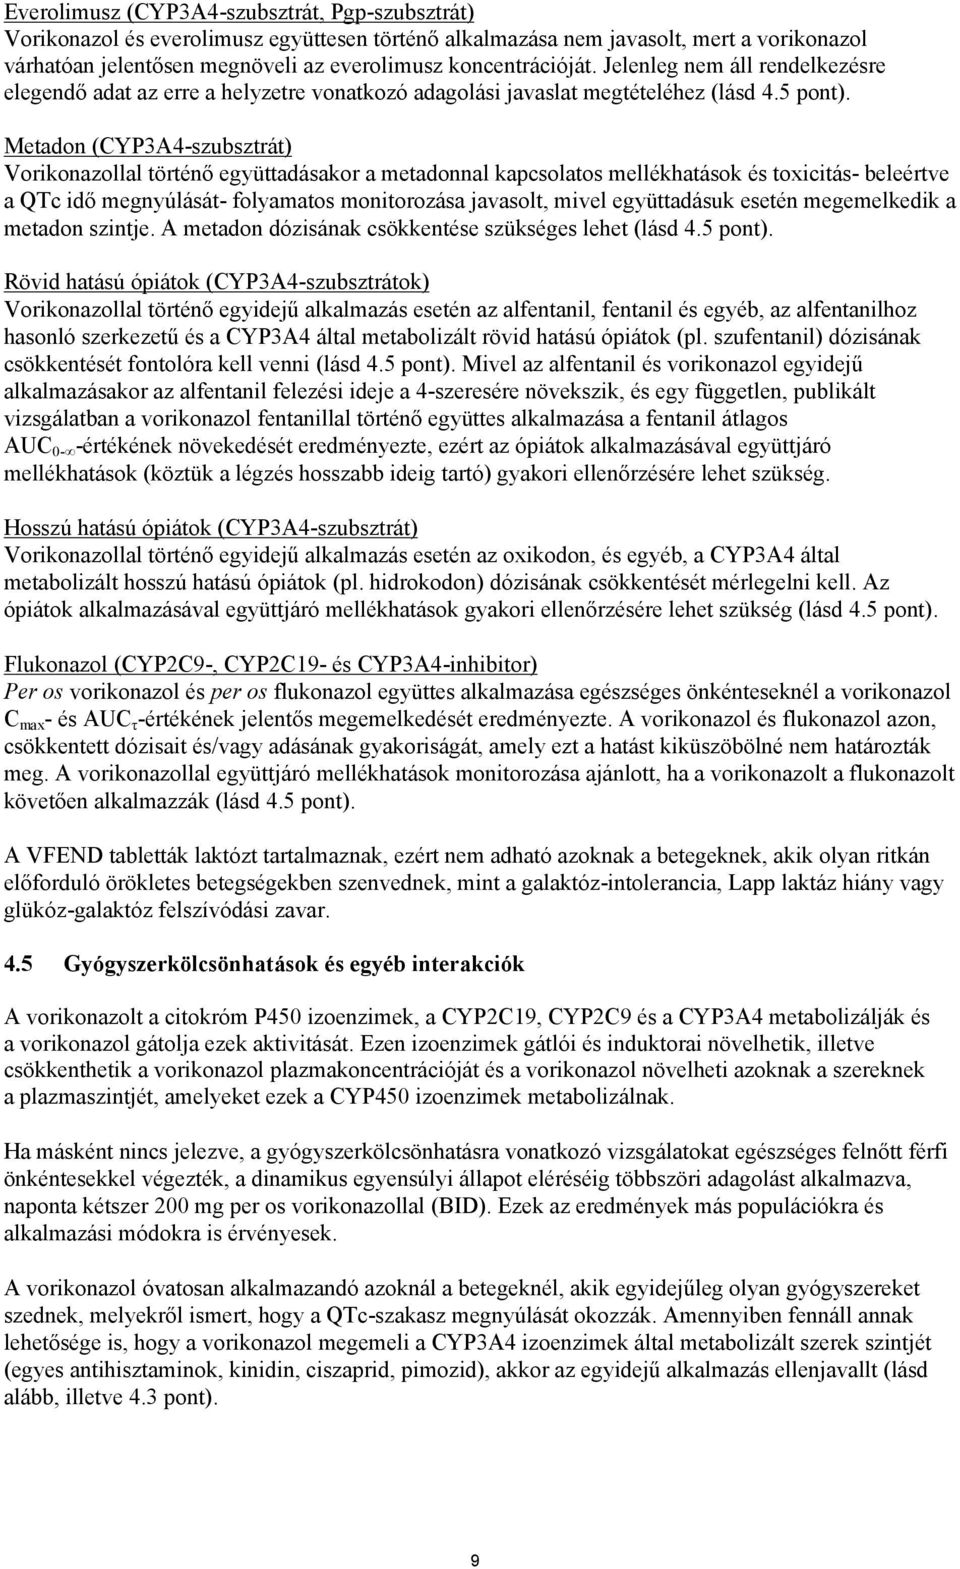 Metadon (CYP3A4-szubsztrát) Vorikonazollal történő együttadásakor a metadonnal kapcsolatos mellékhatások és toxicitás- beleértve a QTc idő megnyúlását- folyamatos monitorozása javasolt, mivel